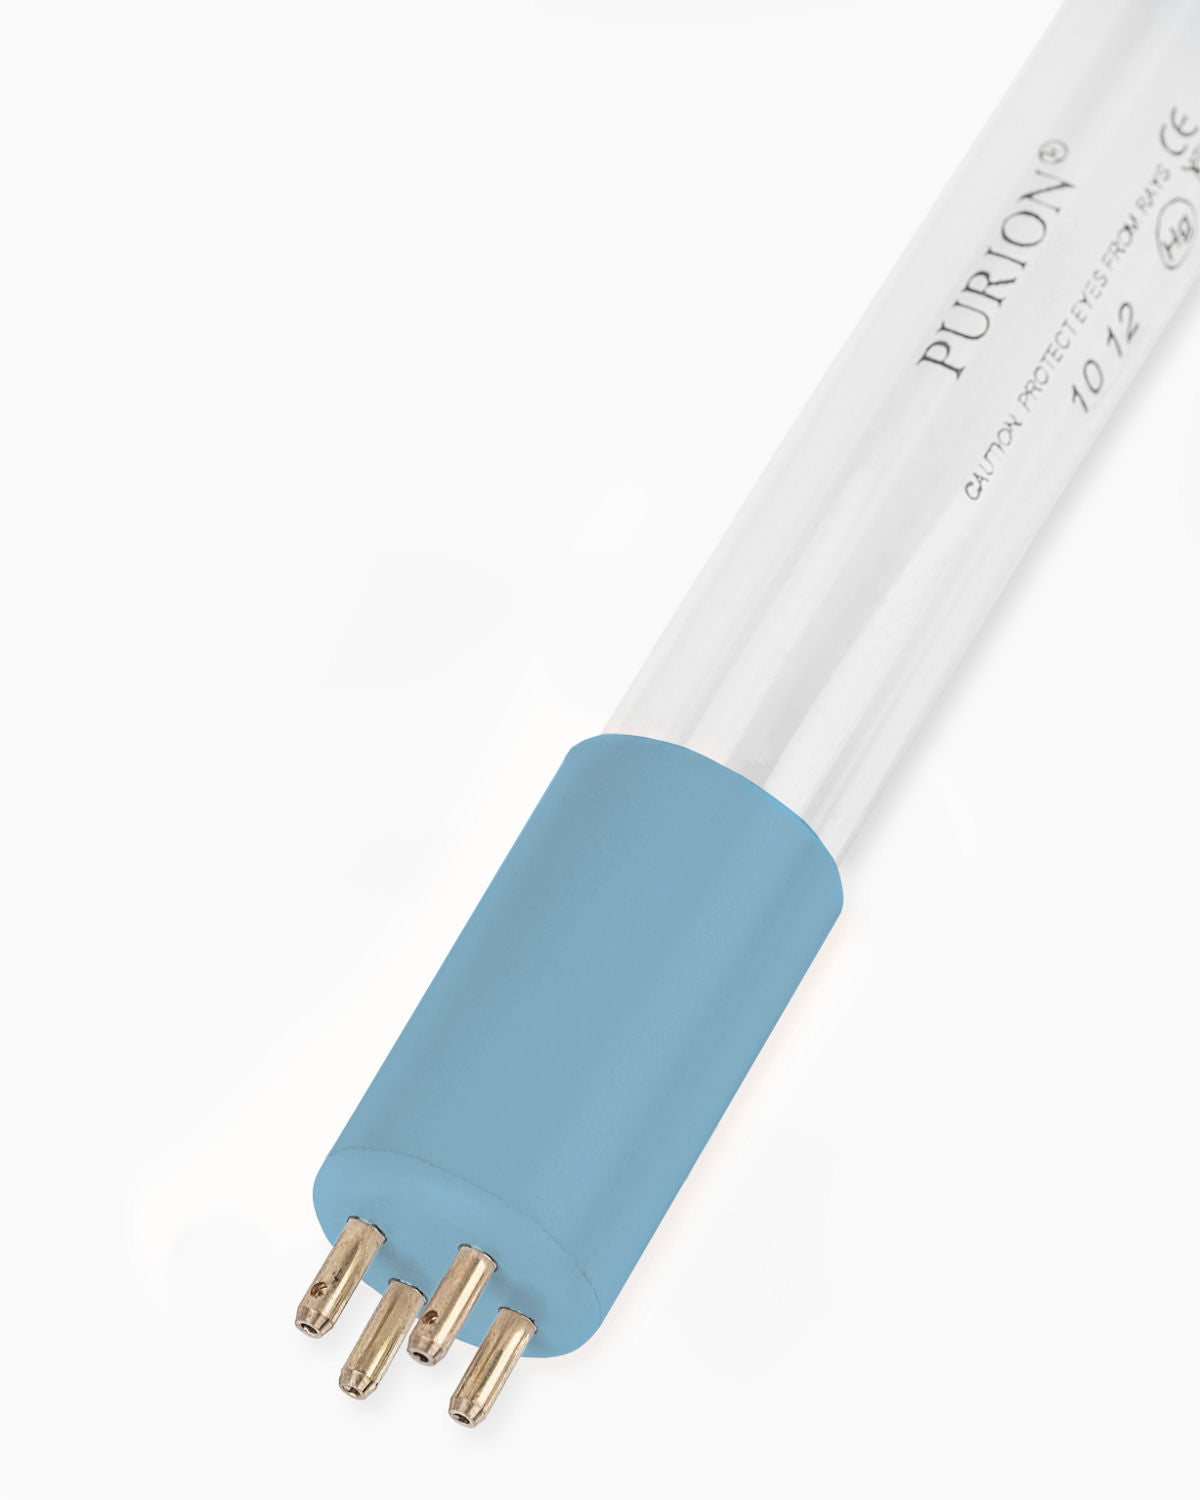 Eine PURION 2500 90 W Basic Blaulichtröhre auf weißem Hintergrund zur UV-C-Desinfektion (von PURION GmbH).